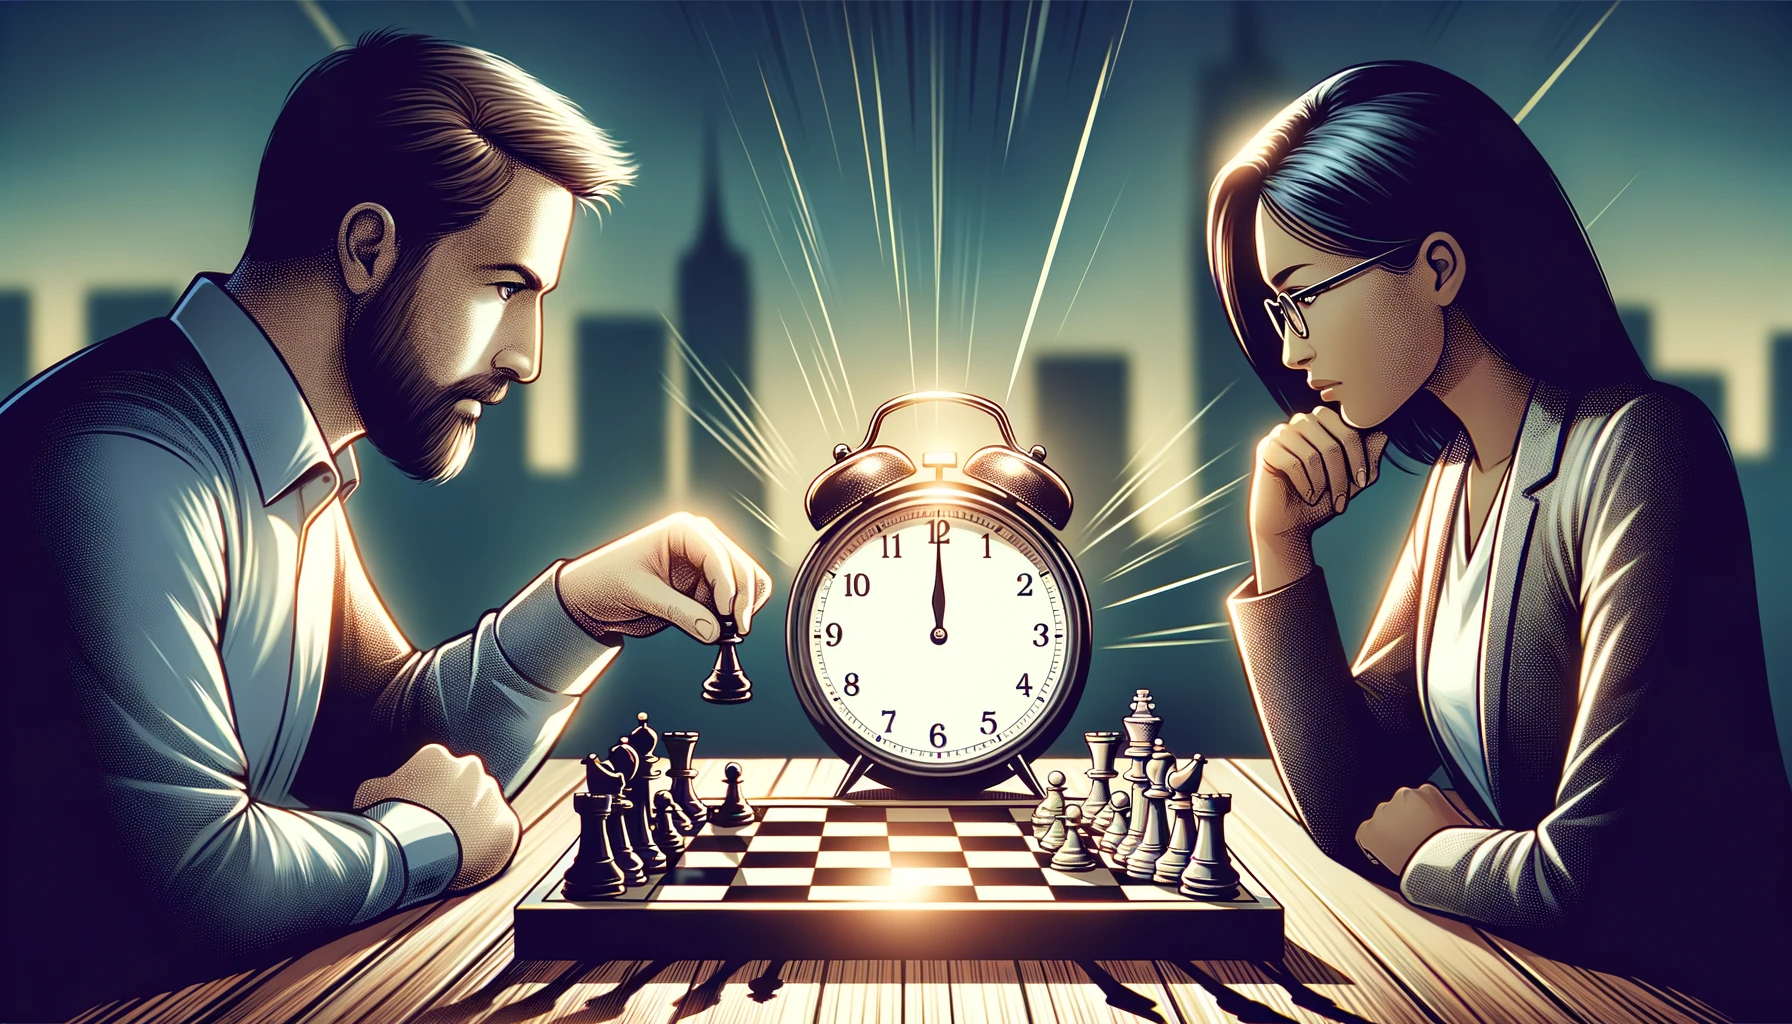 Illustration von zwei verschiedenen Personen, die in ein spannendes Schachspiel vertieft sind, wobei der Schwerpunkt auf der tickenden Schachuhr zwischen ihnen liegt.